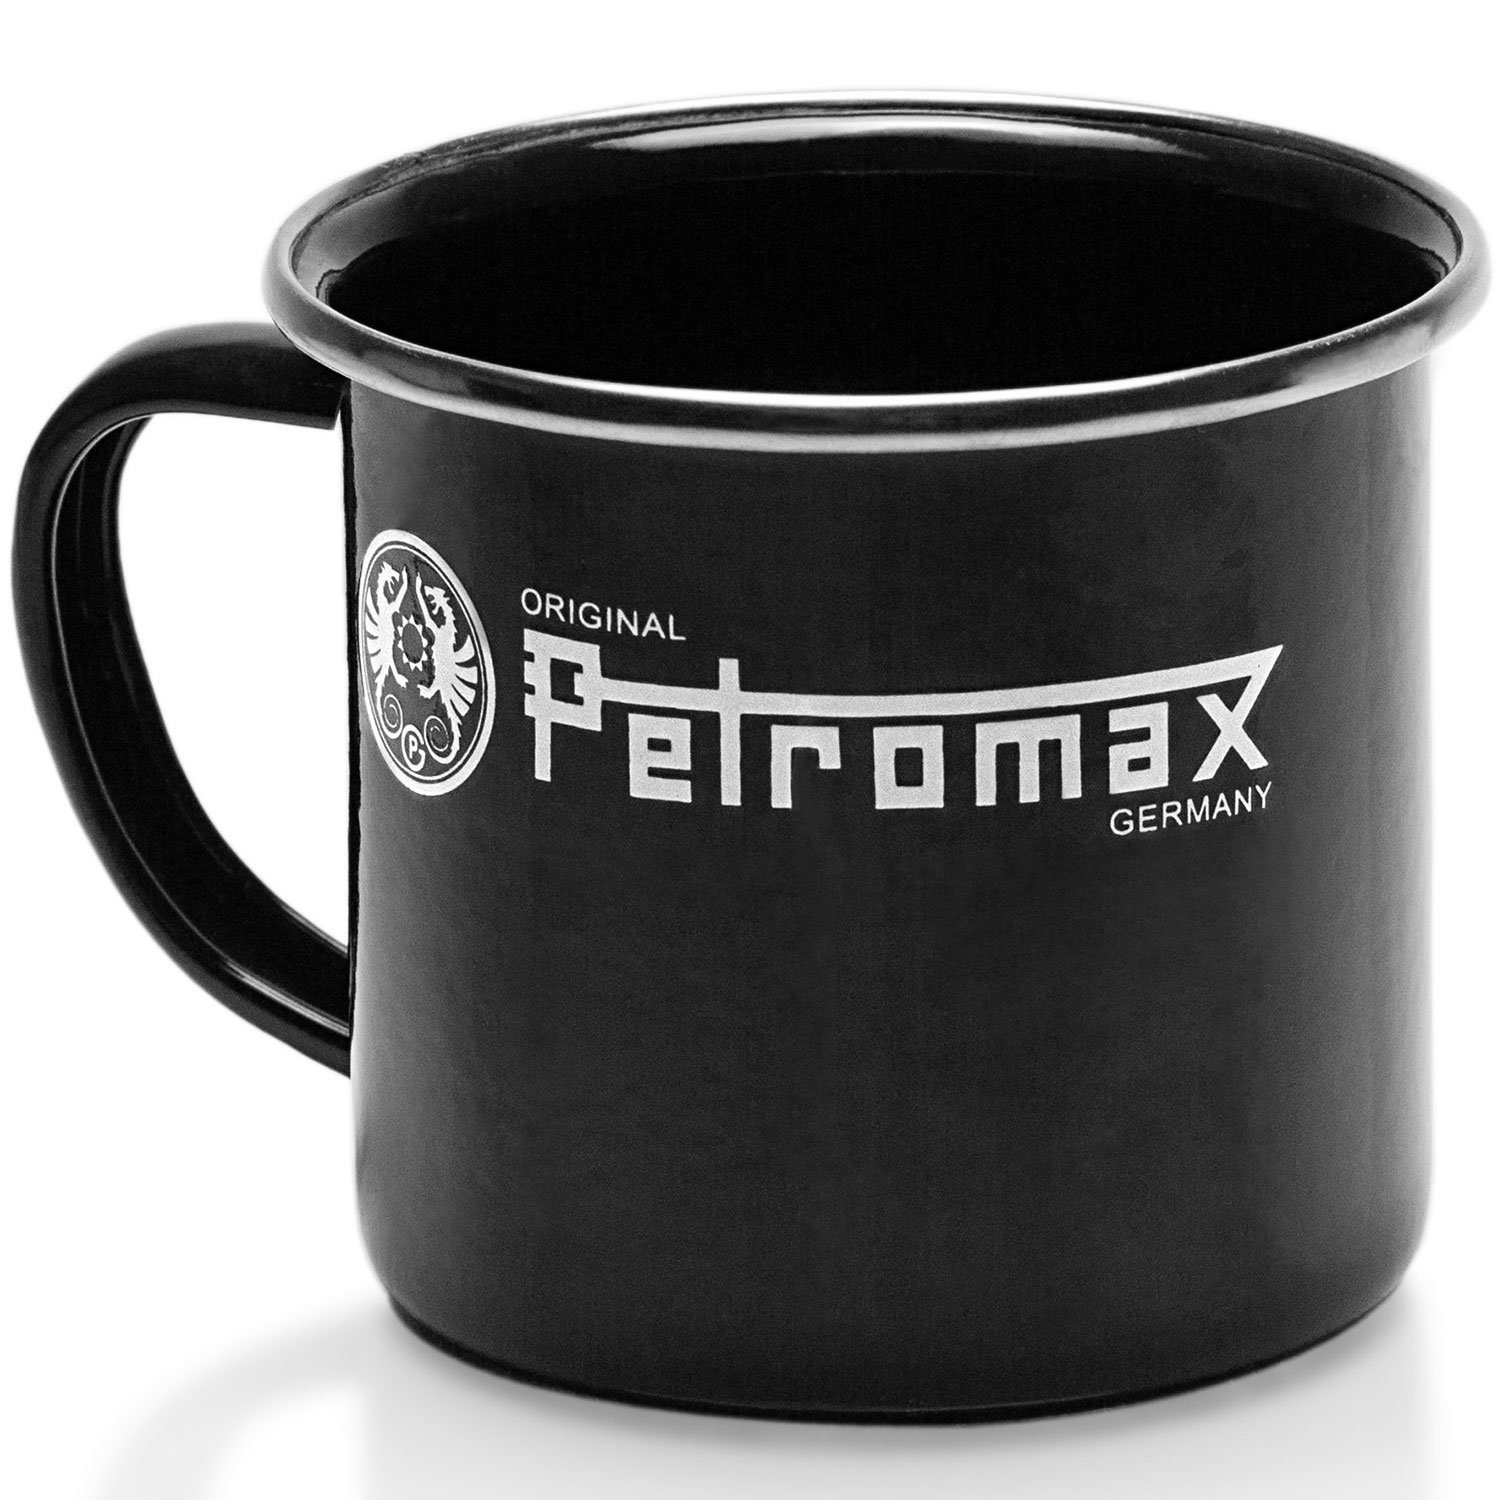 Outdoor in Petromax 7 Geschirr-Set schwarz, teilig Perkolator+Becher+Schüssel+Teller Perkolator Vorteils-Set